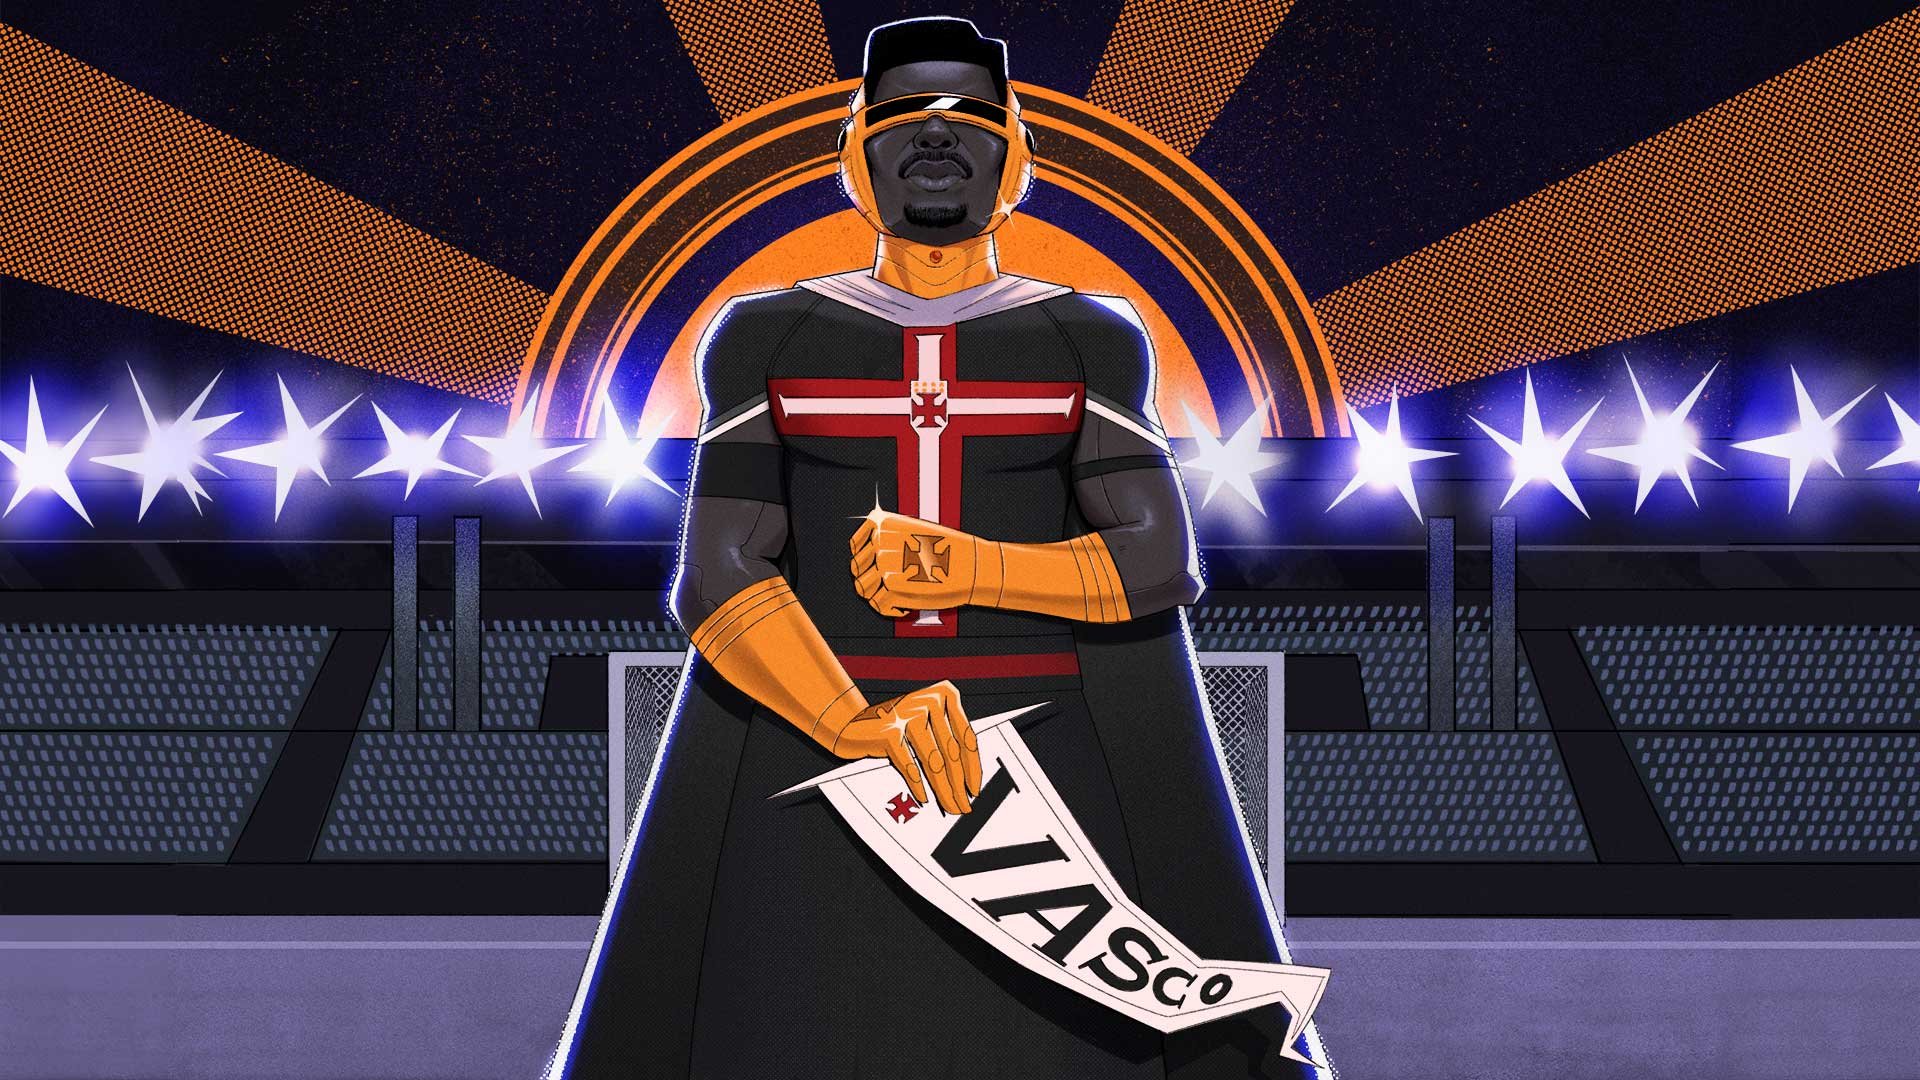 Vasco estreia no universo das NFTs relembrando luta antirracista do clube. (Fonte: Club de Regatas Vasco da Gama/Reprodução)